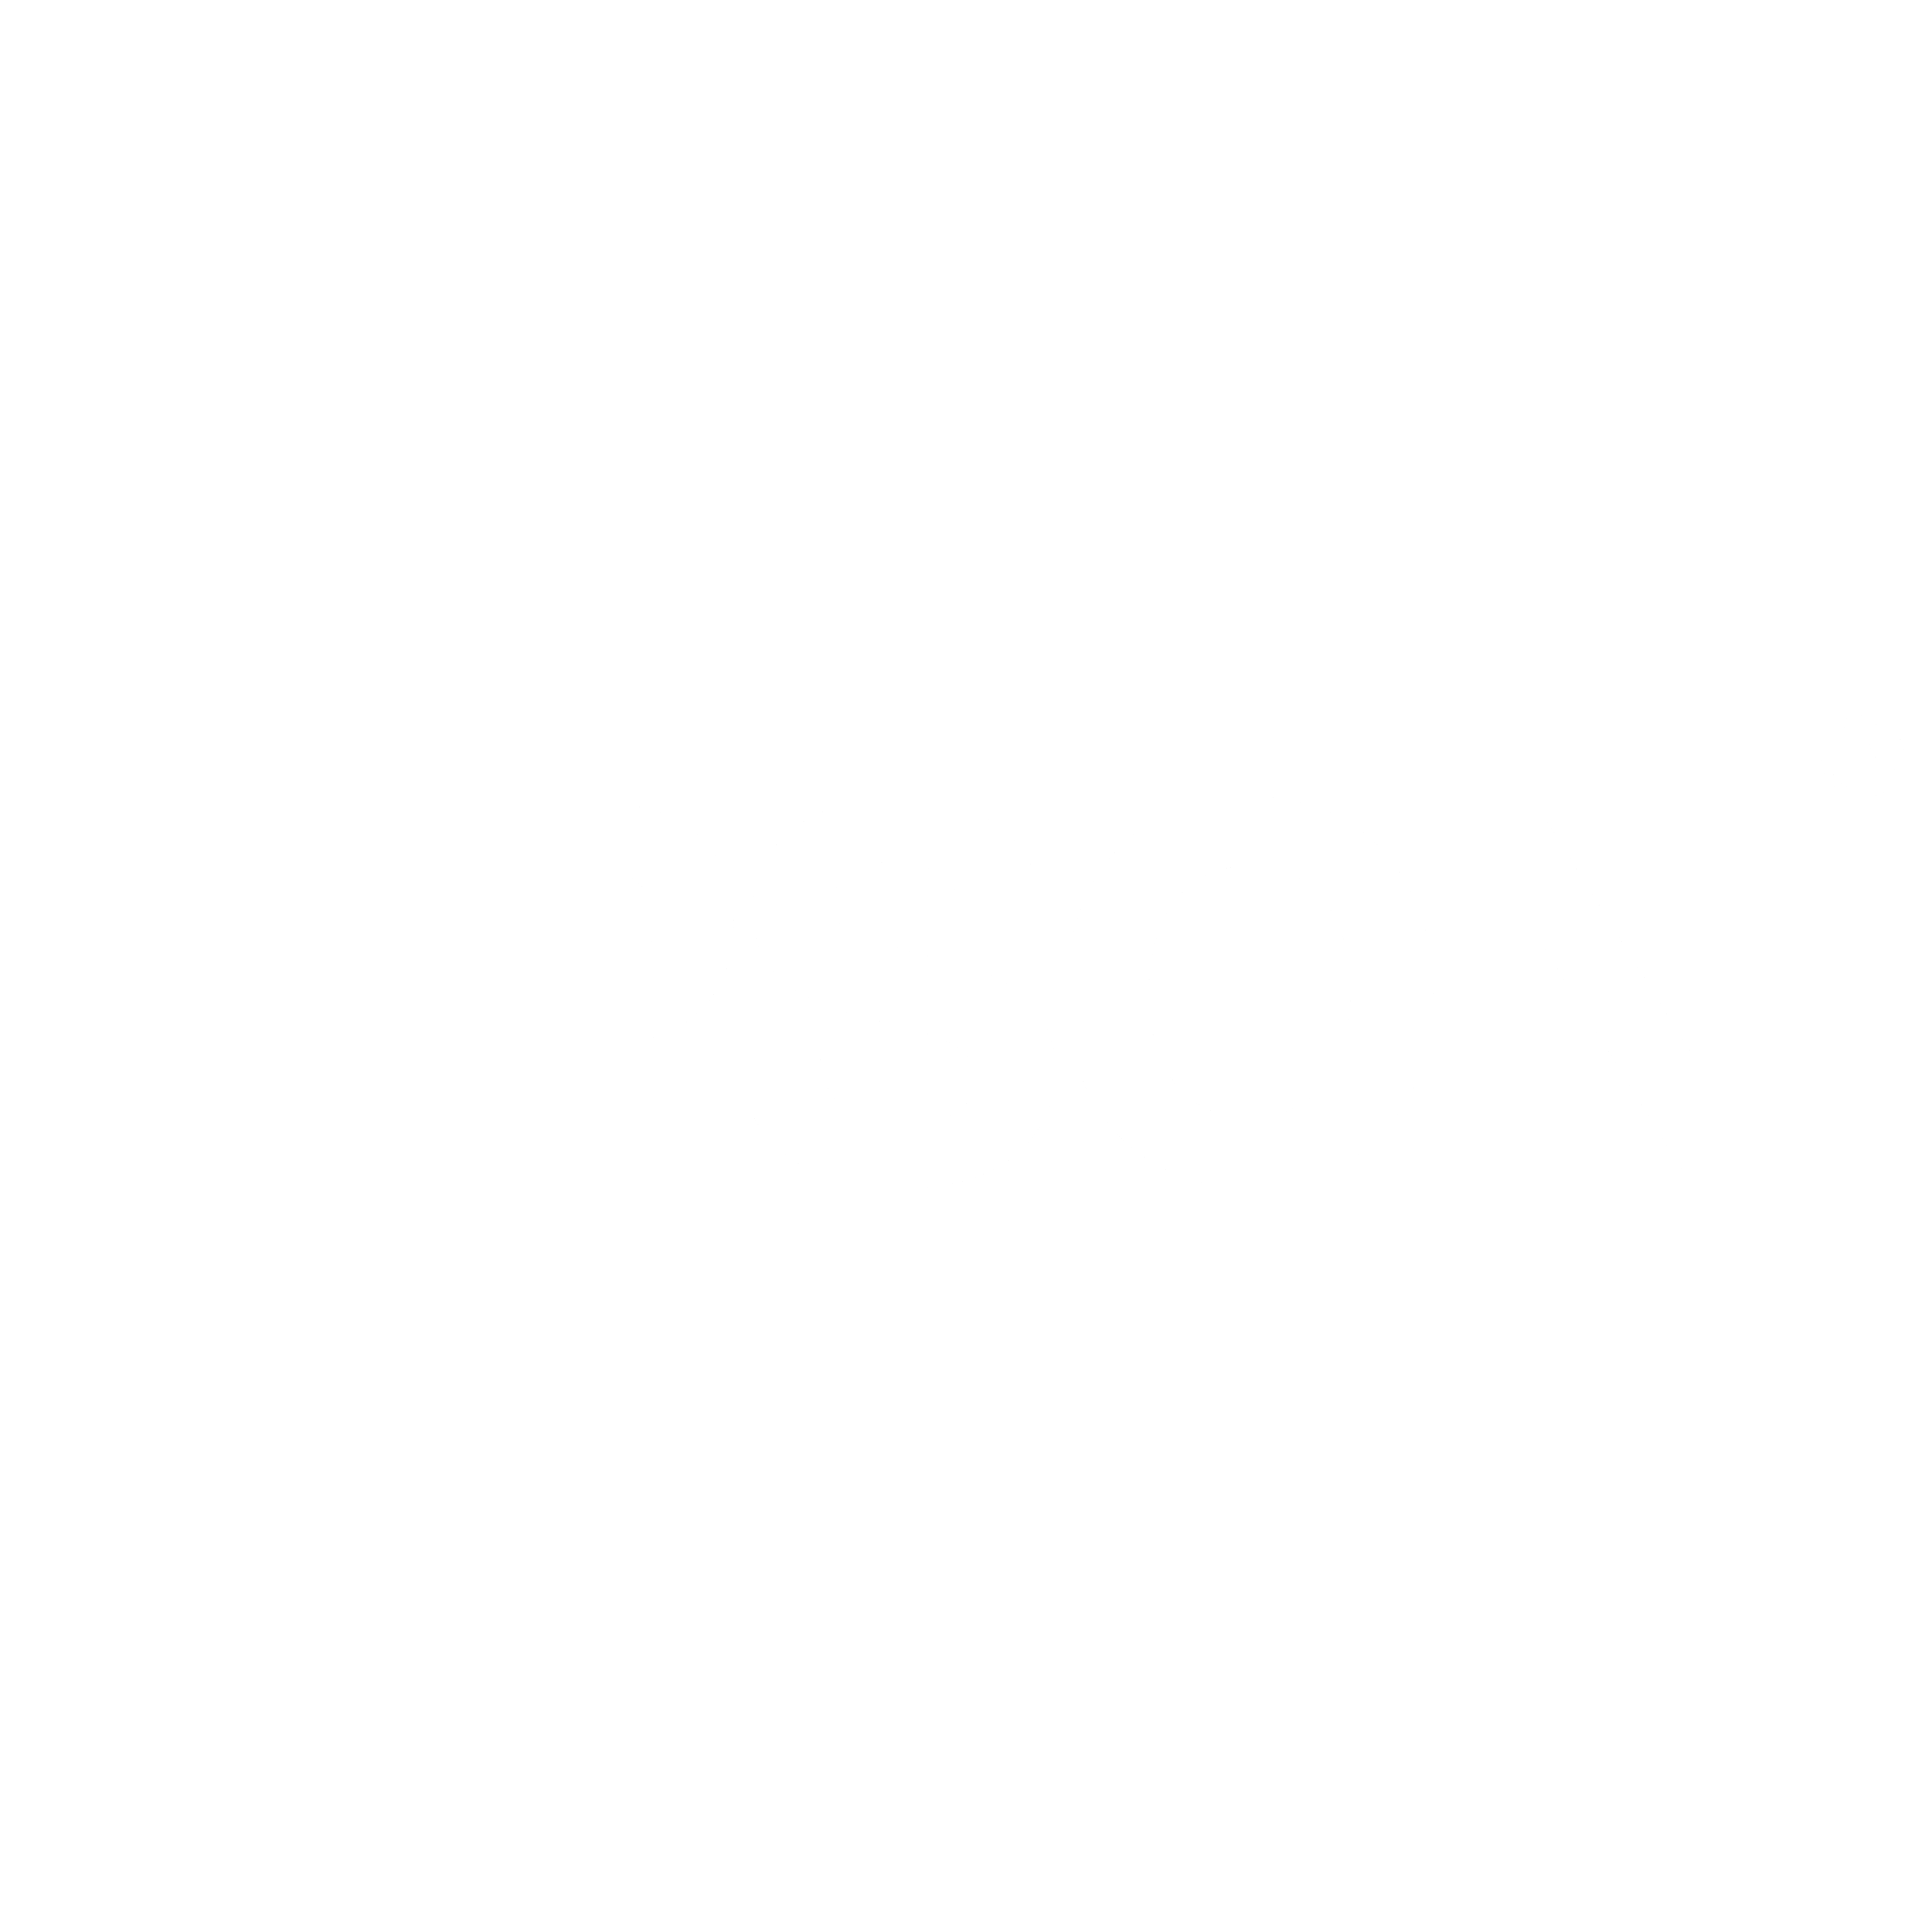 Epson Logo Black And White , 